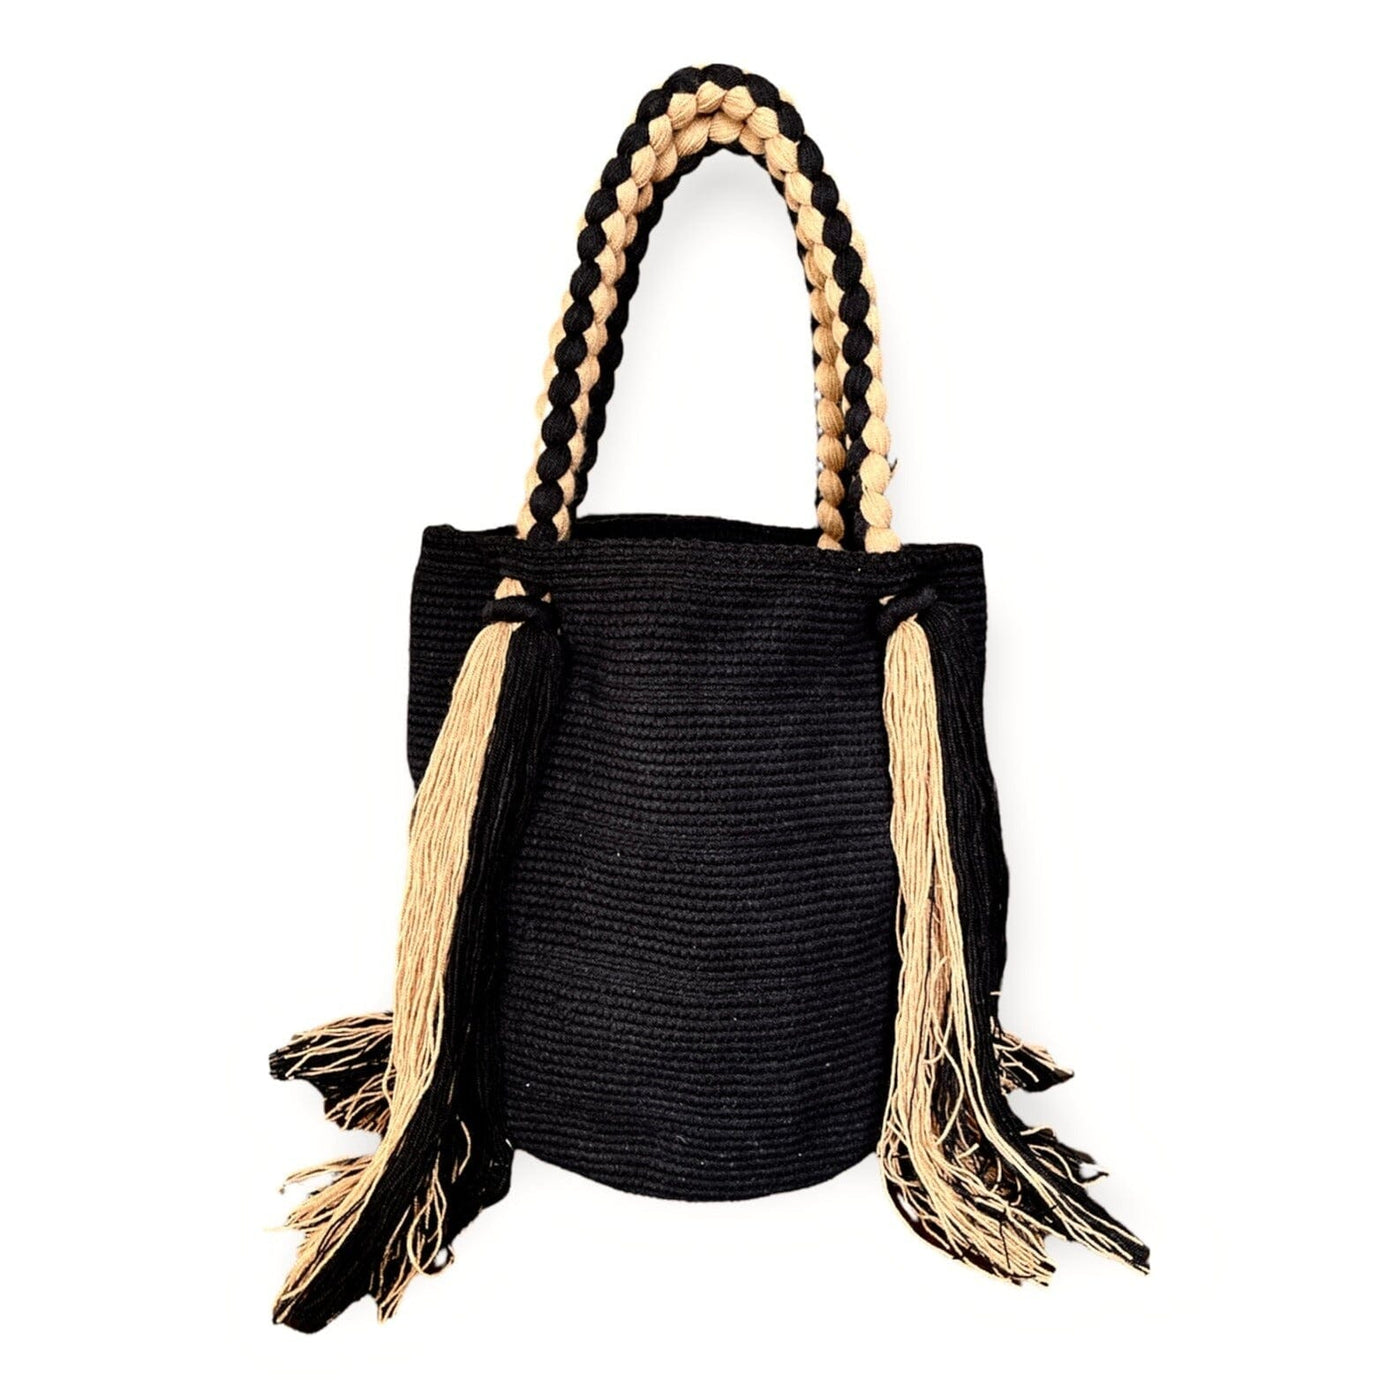 Best Summer Tote Beach Bag | Trending Summer Black Tote Bag with Tassels | Colorful 4U